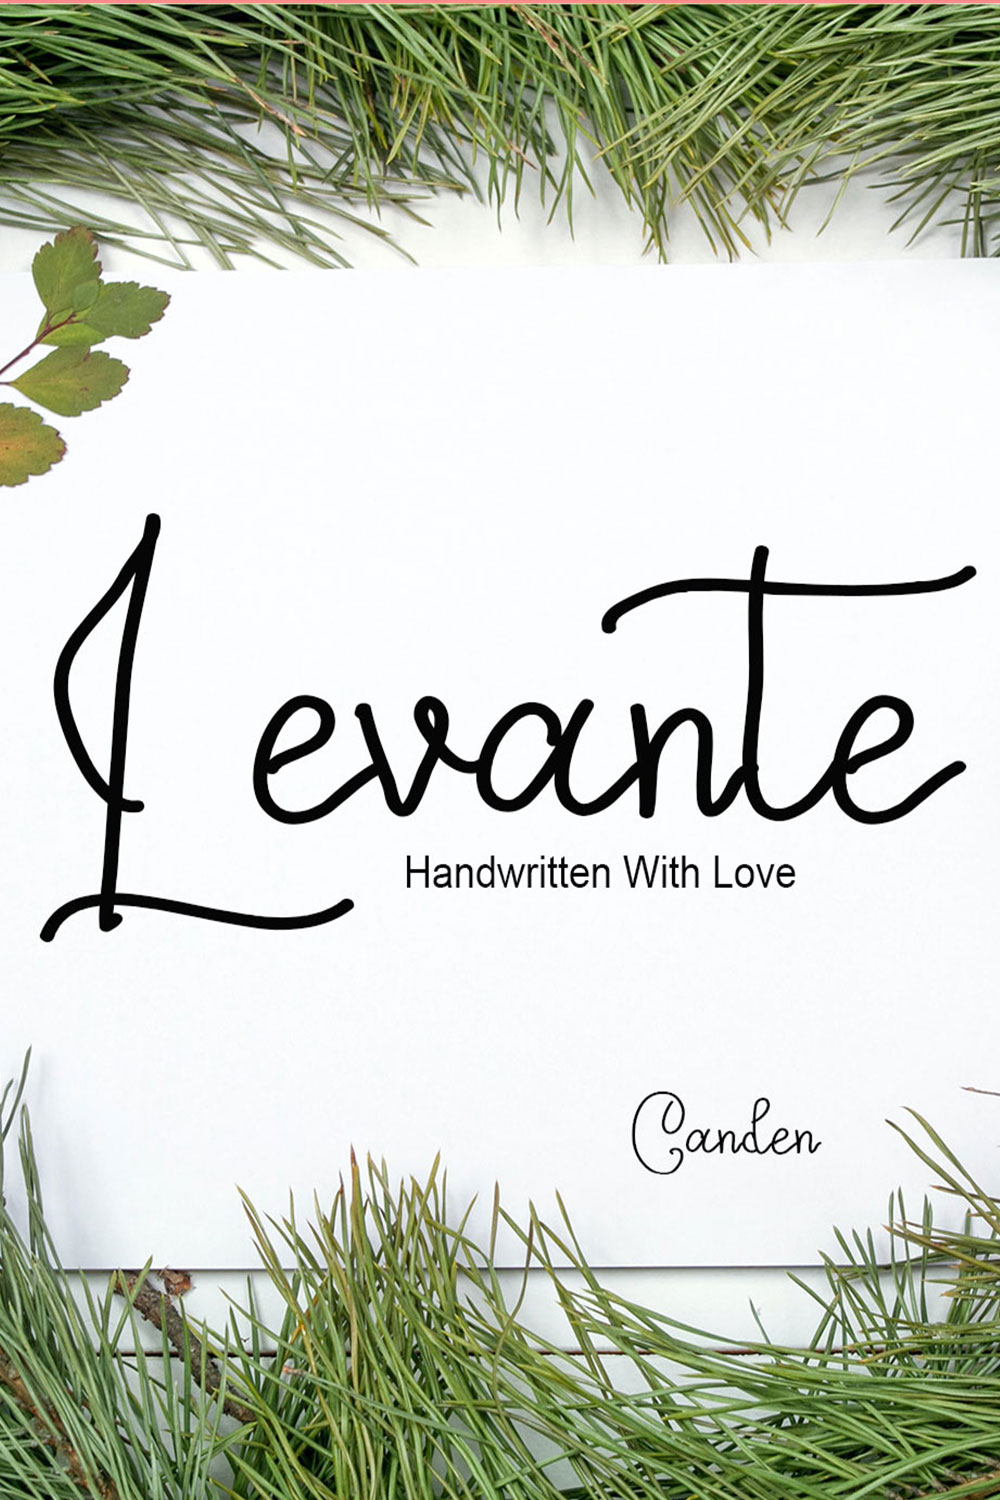 Levante Script Signature Font Pinterest image.